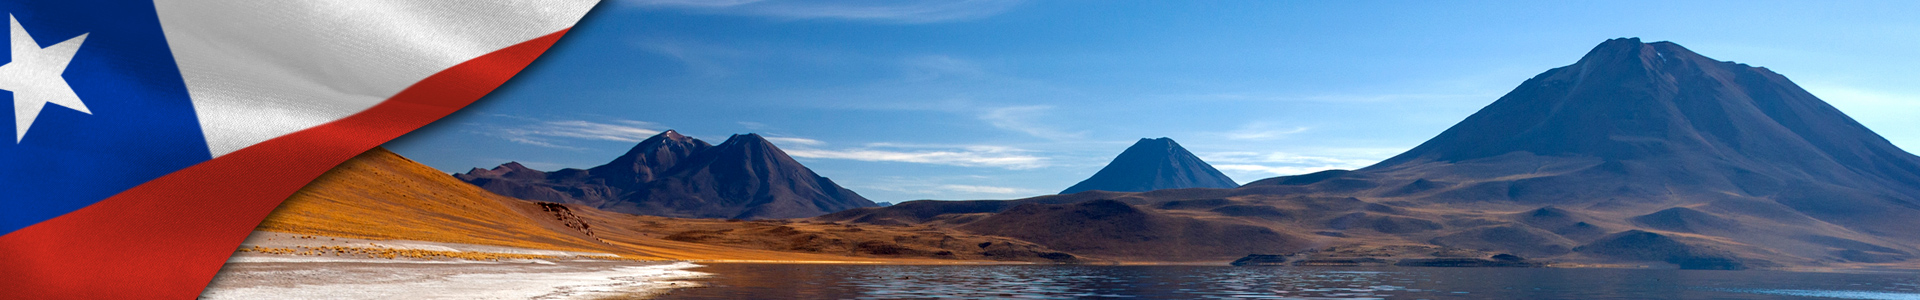 Bandera de Chile y foto de Laguna Miscanti en lo alto del altiplano - Desierto de Atacama - Chile